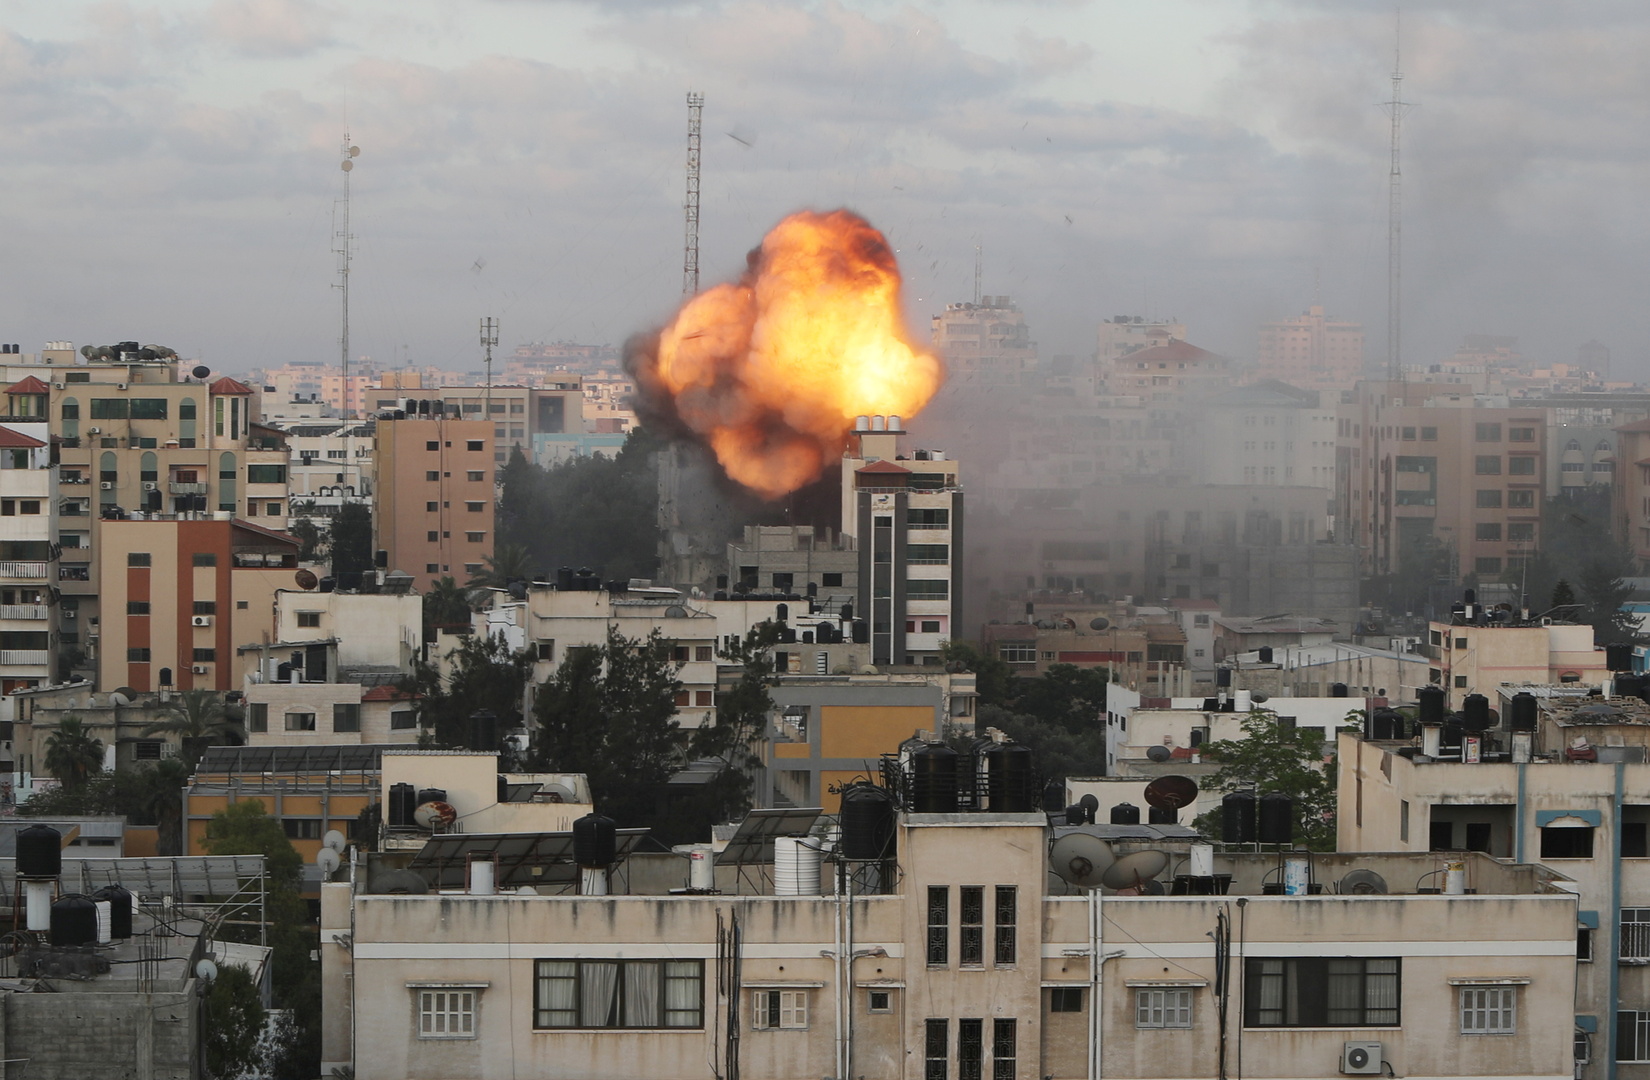 دبلوماسيون: فرنسا تطرح احتمال قرار أممي حول إسرائيل وغزة